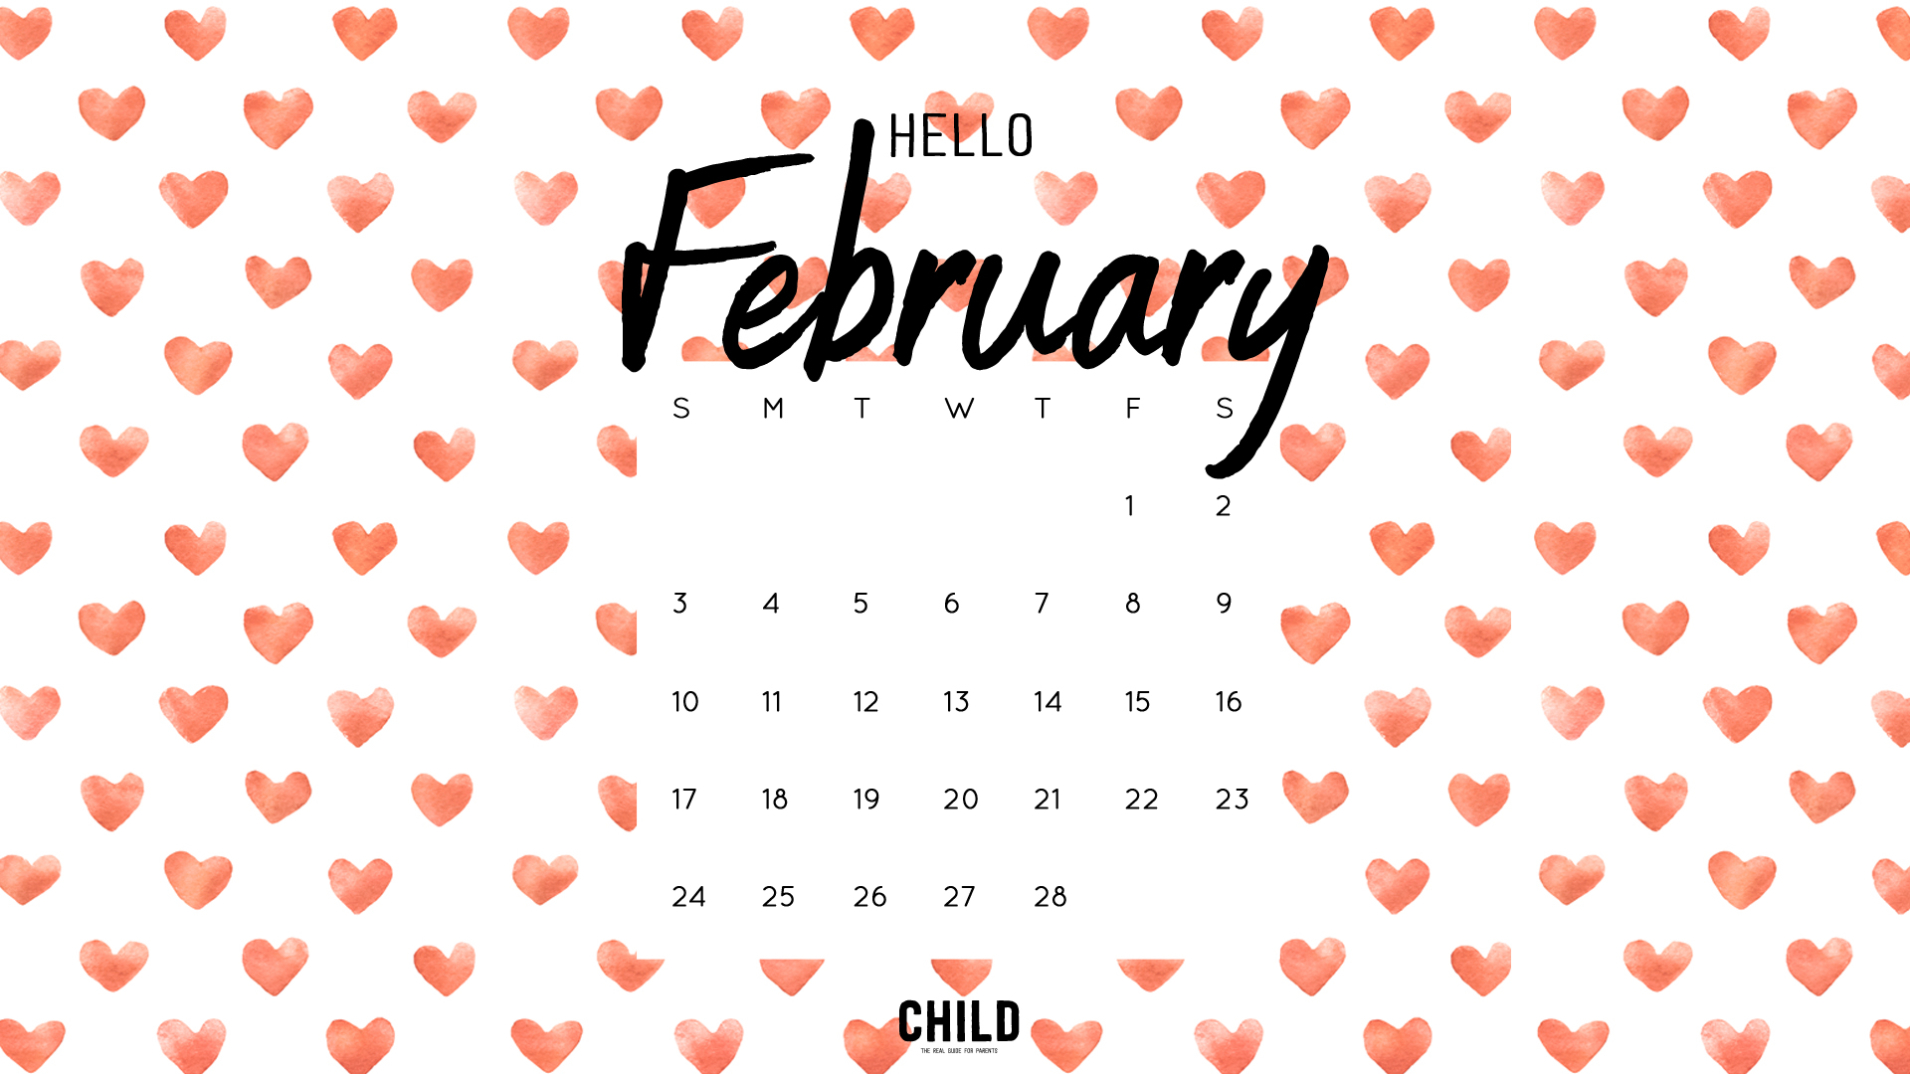 A February Calendar Wallpaper For You